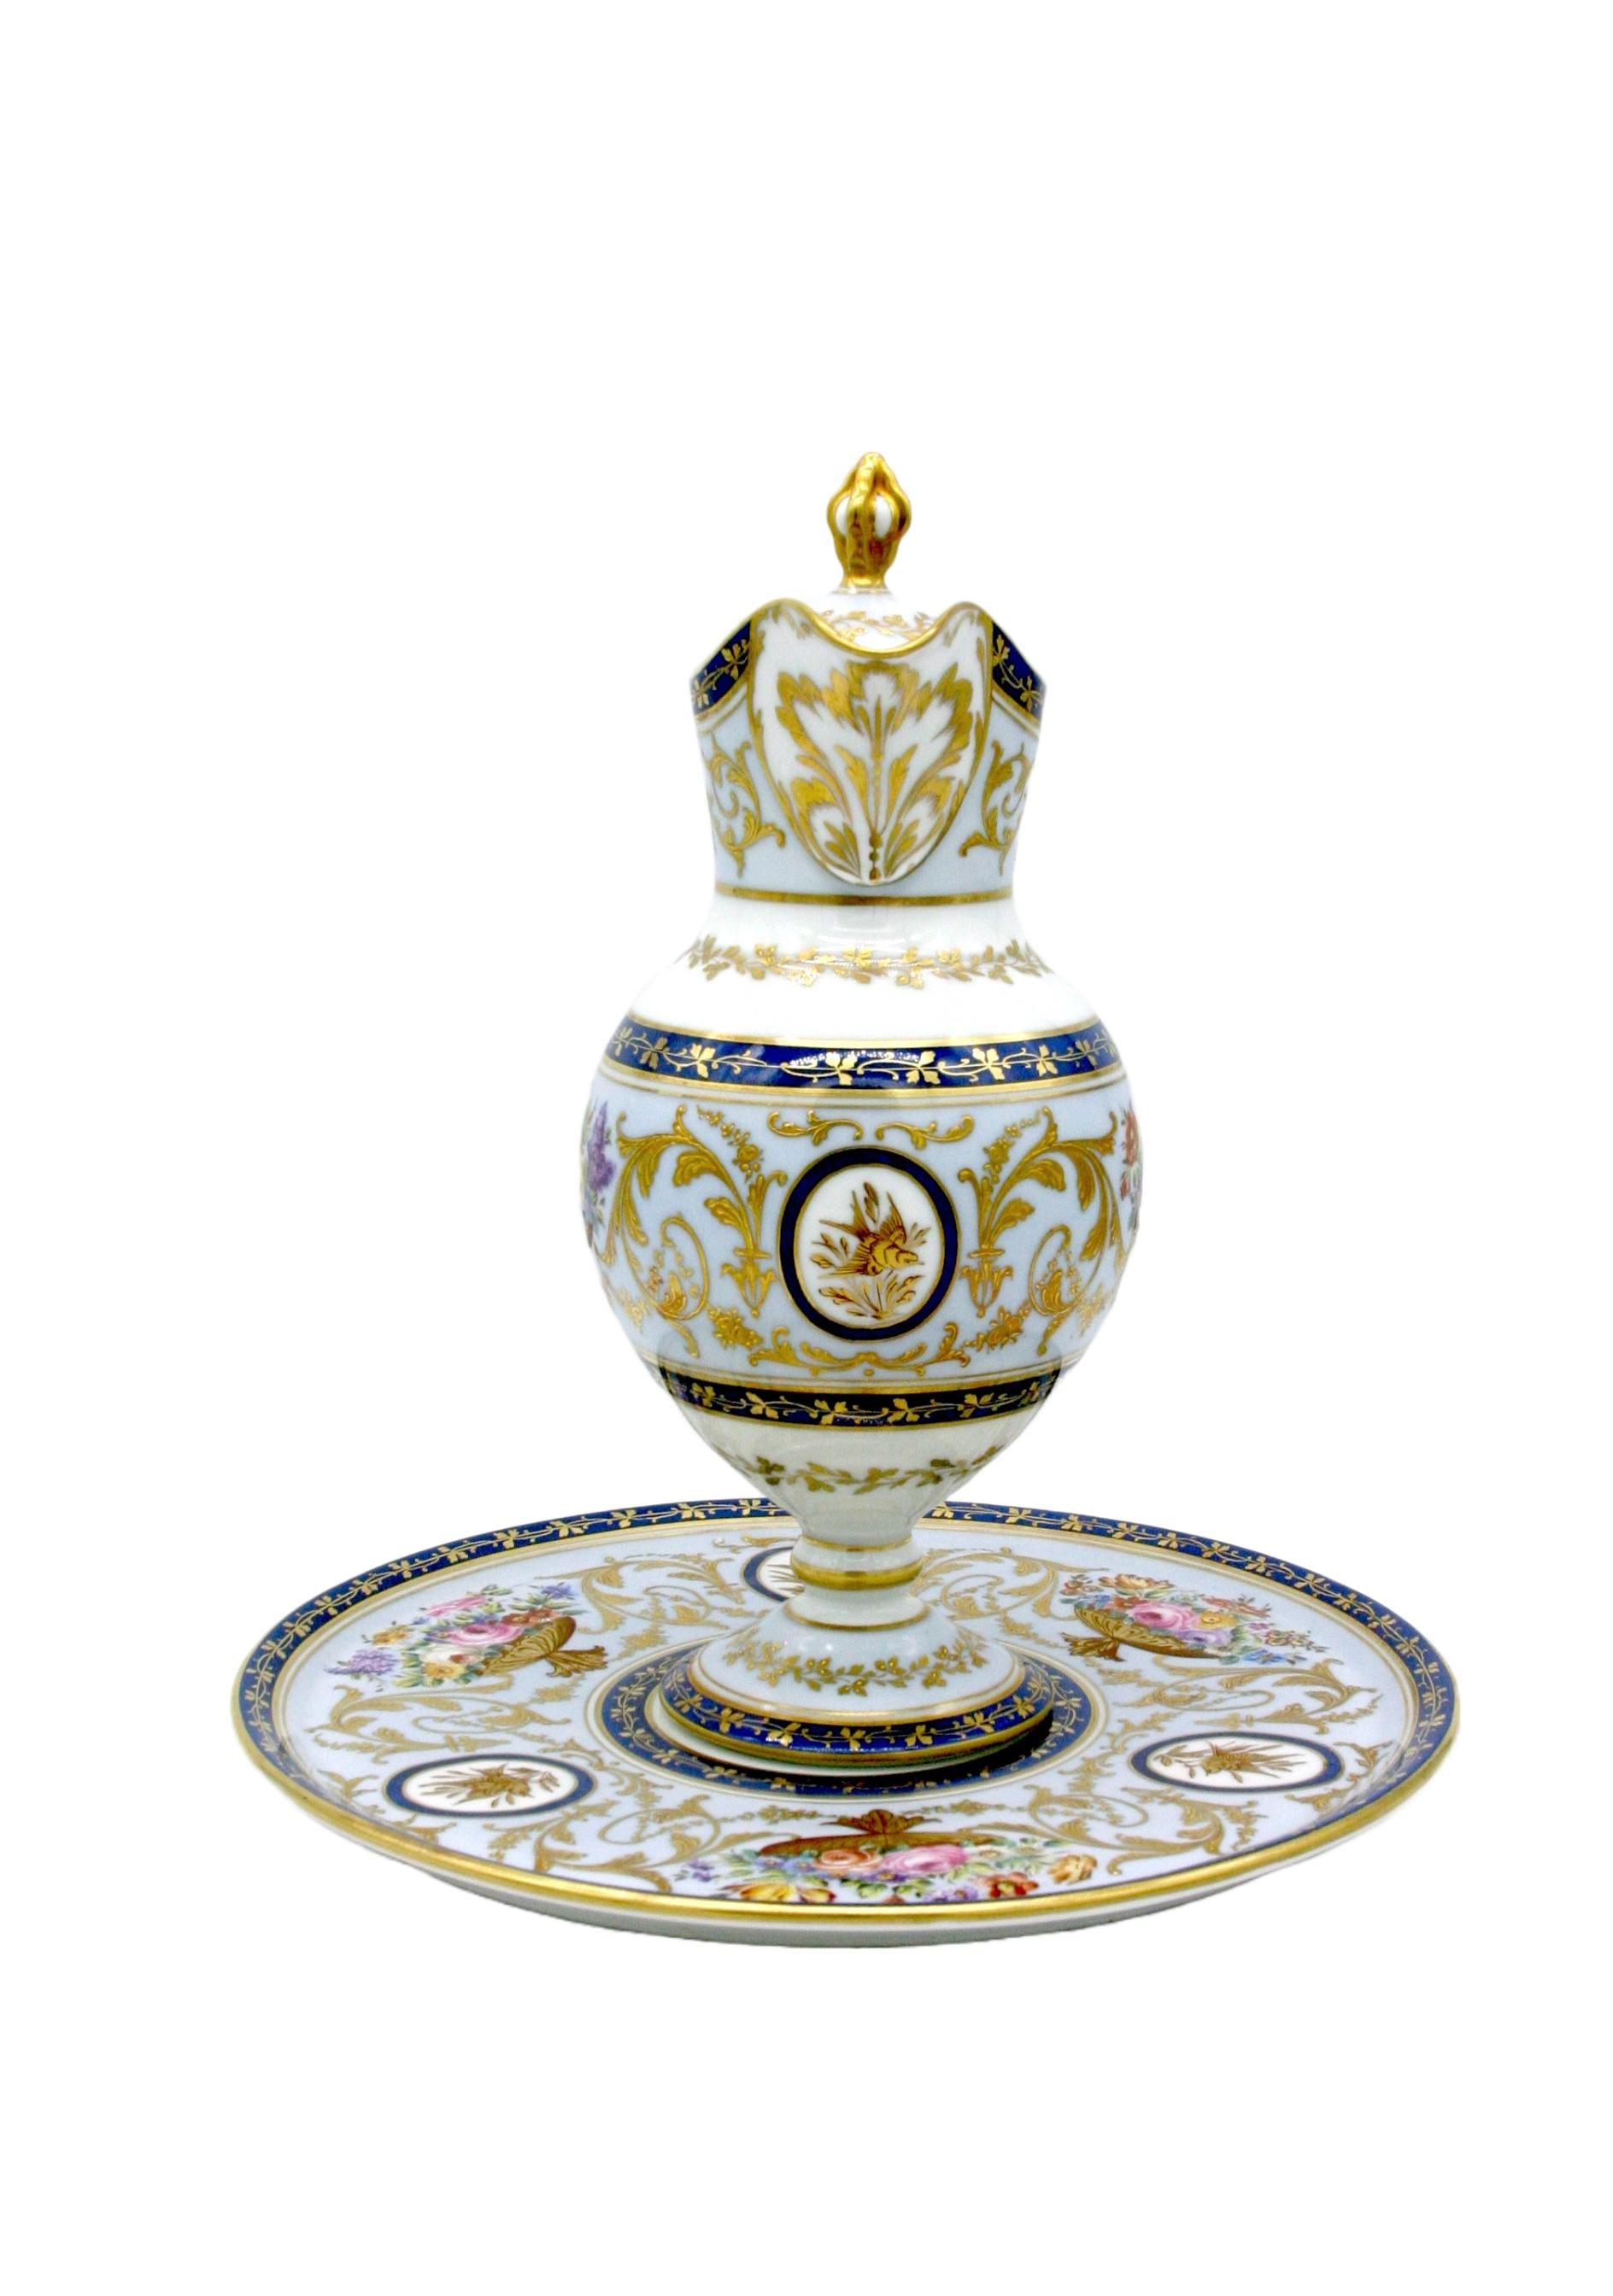 service de table décoratif en porcelaine peint à la main et doré à l'or fin du 19ème siècle avec service sous assiette de Giraud Limoges . Les pièces sont en excellent état. L'usure mineure appropriée à l'âge / l'utilisation. Marque du fabricant